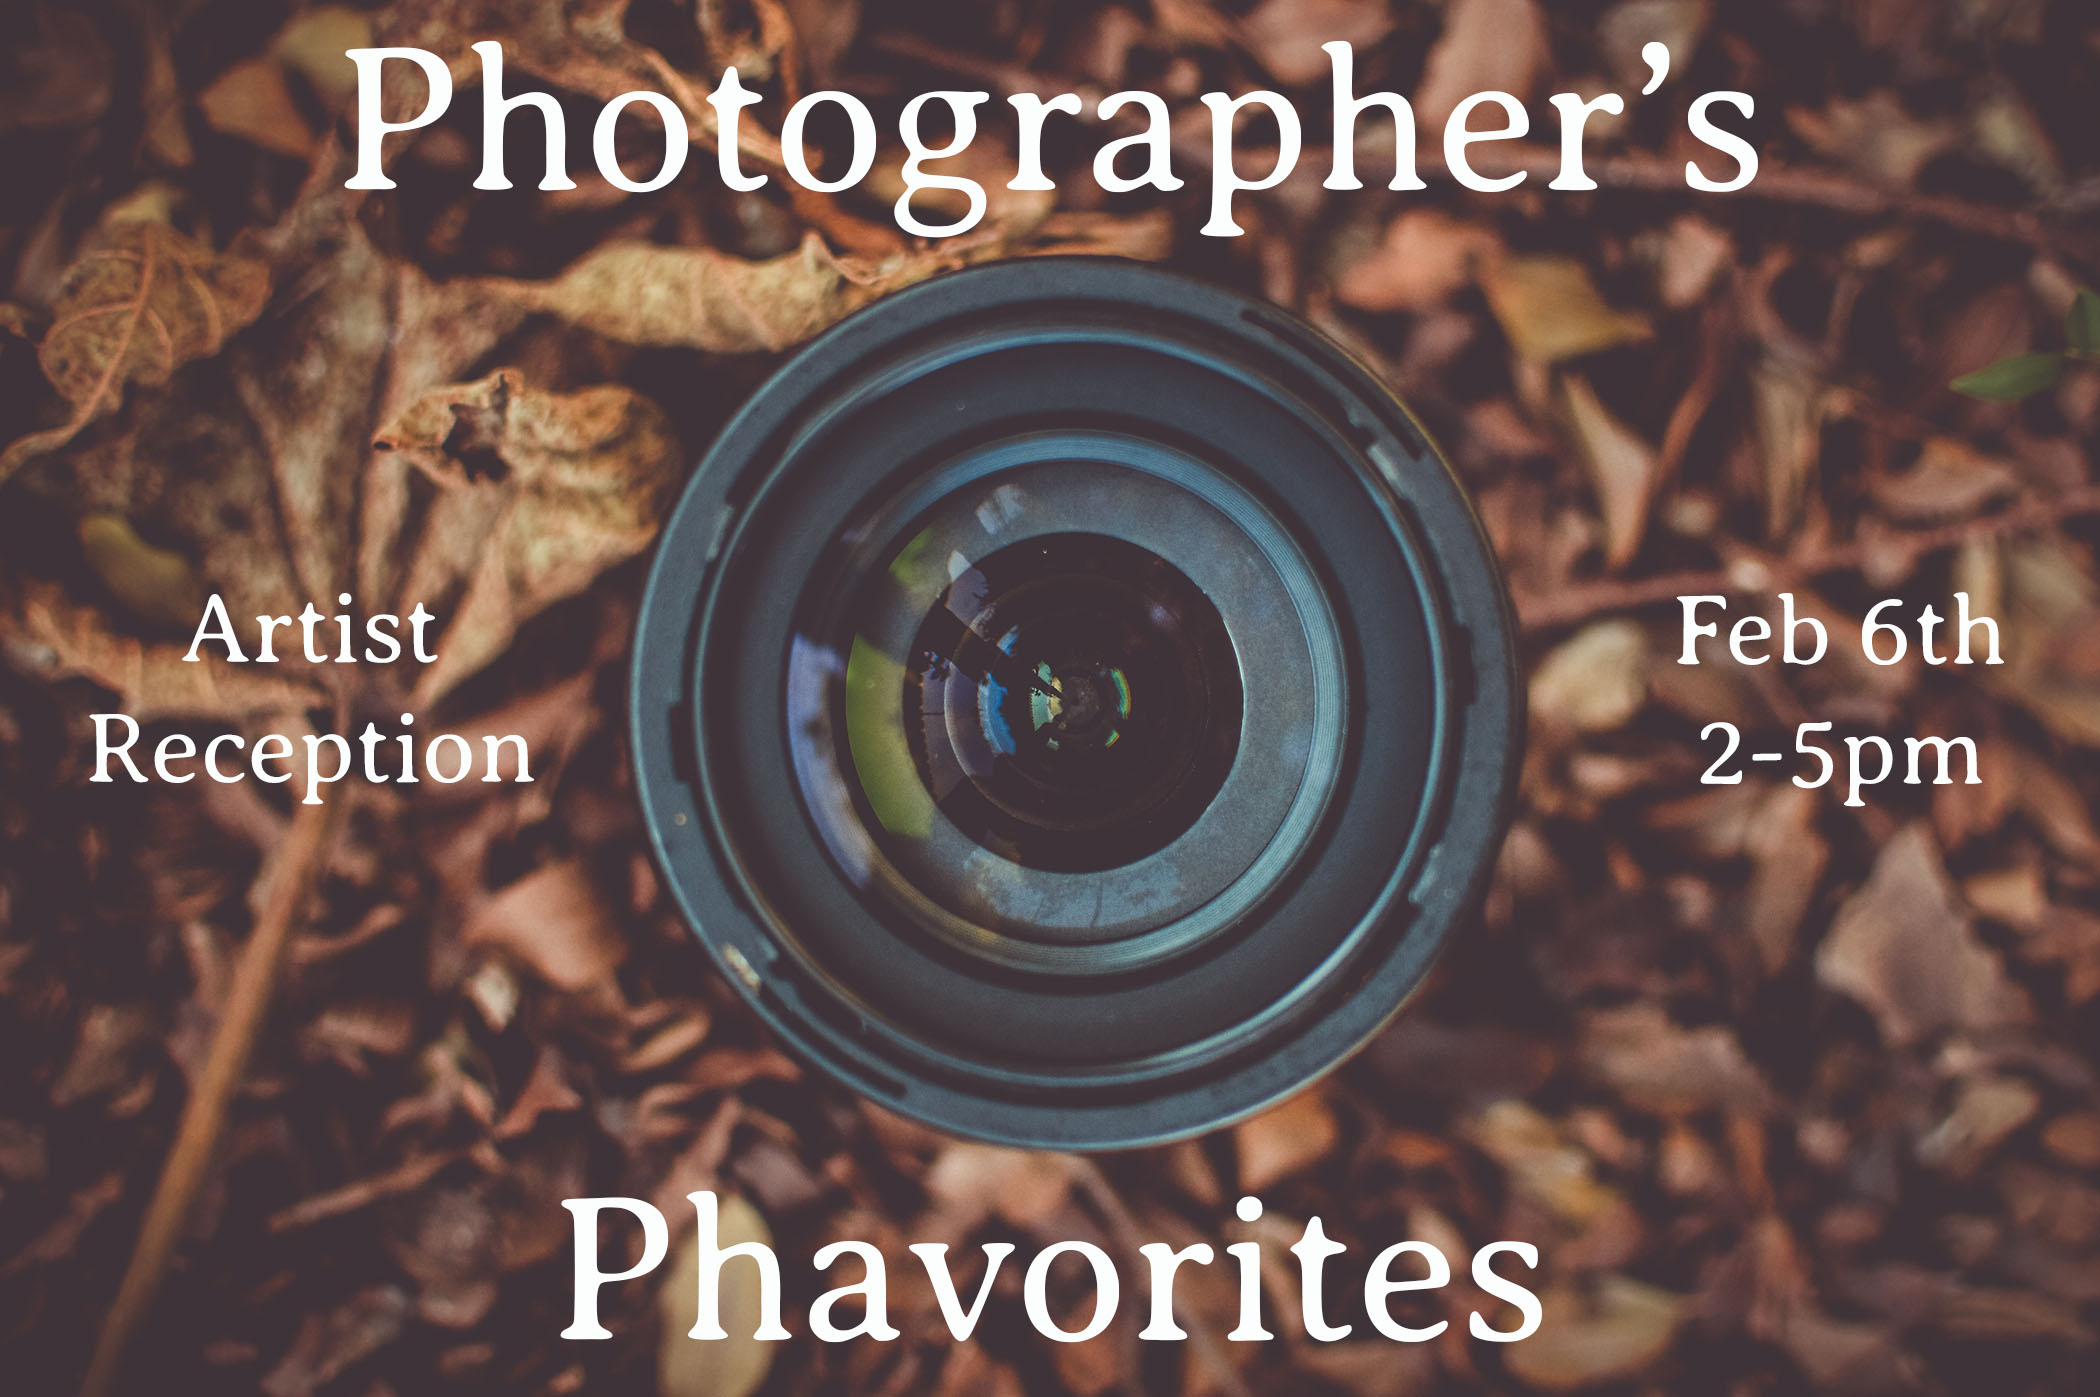 Photographer's Phavorites